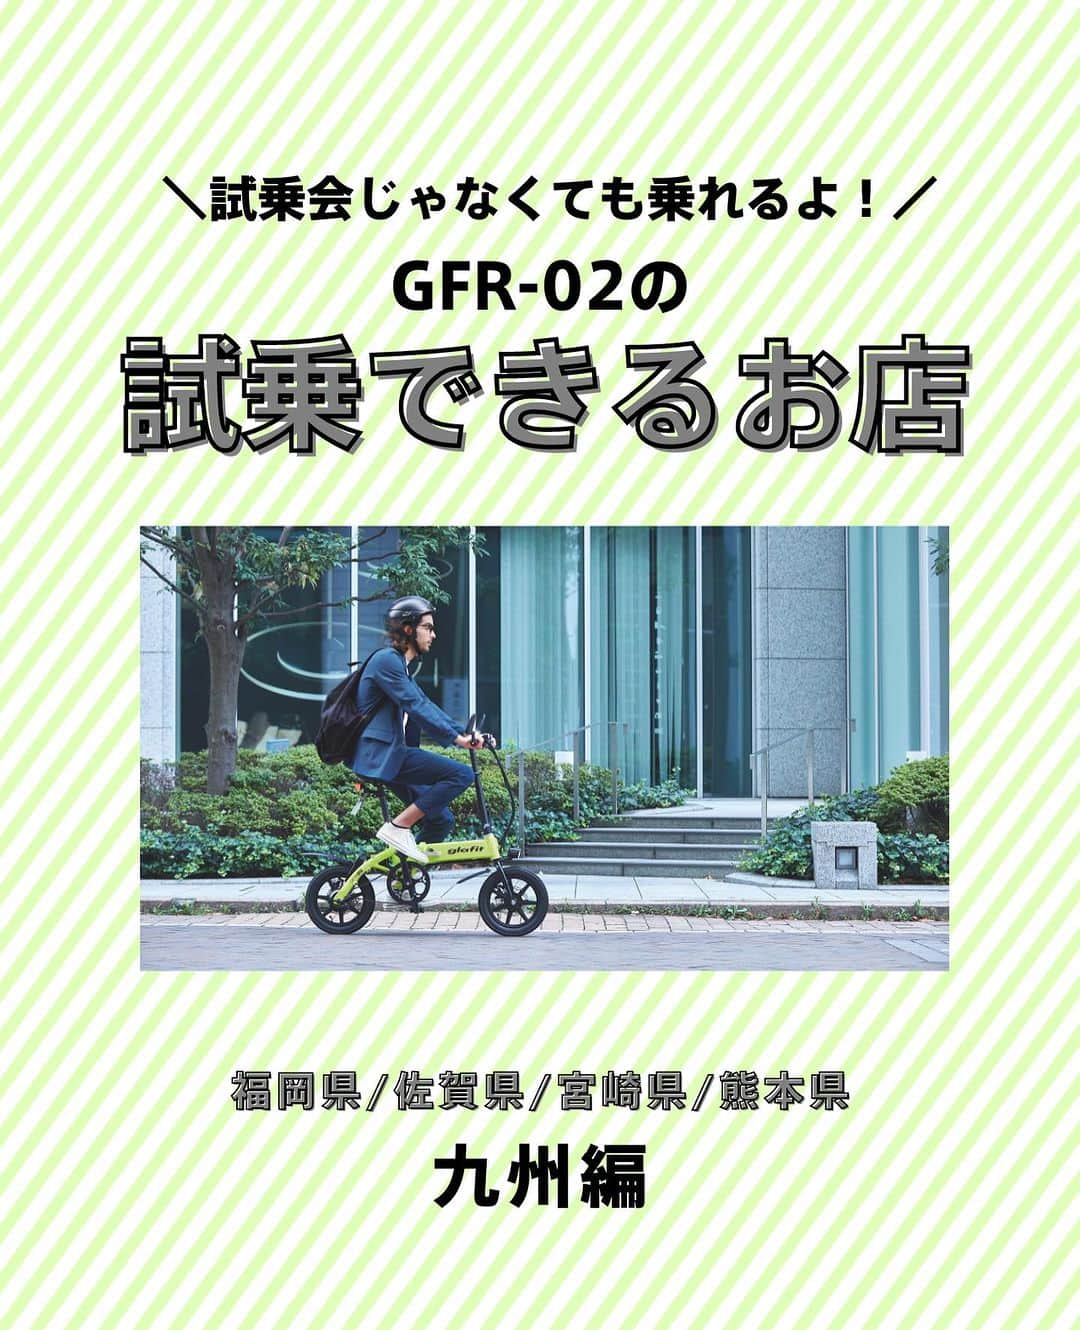 glafitのインスタグラム：「→ 試乗会じゃなくても電動バイクに乗れるよ！  ＼試乗OKの取扱店教えます！／  ✨電動バイクと自転車の二刀流 GFR-02に乗ってみたい！  ✨バイク初めてだけどちゃんと乗りこなせるかな・・？  そんな方は ぜひお近くの「試乗OK」のお店へGO!  GFR-02のお取扱店の中でも 試乗予約を日々受け付けている お店があります👌  本日は九州地方編👏 福岡、佐賀、熊本、宮崎の 試乗OKのお店をご紹介💫  まずは乗ってみて、 その爽快な走りを体験してくださいね！  ＝＝＝＝＝＝  #GFR-02 って  💫どこで買えるの？ 💫どういう乗り物なの？ 💫免許は必要？  などなど、 他の投稿でもご紹介しています！  ————————————  #glafit 株式会社  ◆Makuakeで1.3億円達成し、当時の日本最高記録を樹立！ #電動ハイブリッドバイク 「GFR-02」  ◆Makuakeで1.5億円達成！ 立ち乗り電動スクーター「LOM」  #移動をタノシメ！ をコンセプトに、 glafitが開発した #次世代モビリティー のご紹介や、 それにまつわる情報をお届けするアカウントです✌️  ————————————  #glafitバイク #電動バイク #電動自転車 #モビチェン  #eバイク #ebike  #折りたたみ自転車 #原付 #バイク #原付バイク  #自転車生活 #cyclingme #bicyclee #チャリダー #street #SDGs #バイク好きと繋がりたい #街乗り #アウトドア #バイクキャンプ #バイクのある生活 #バイク屋 #バイク試乗」